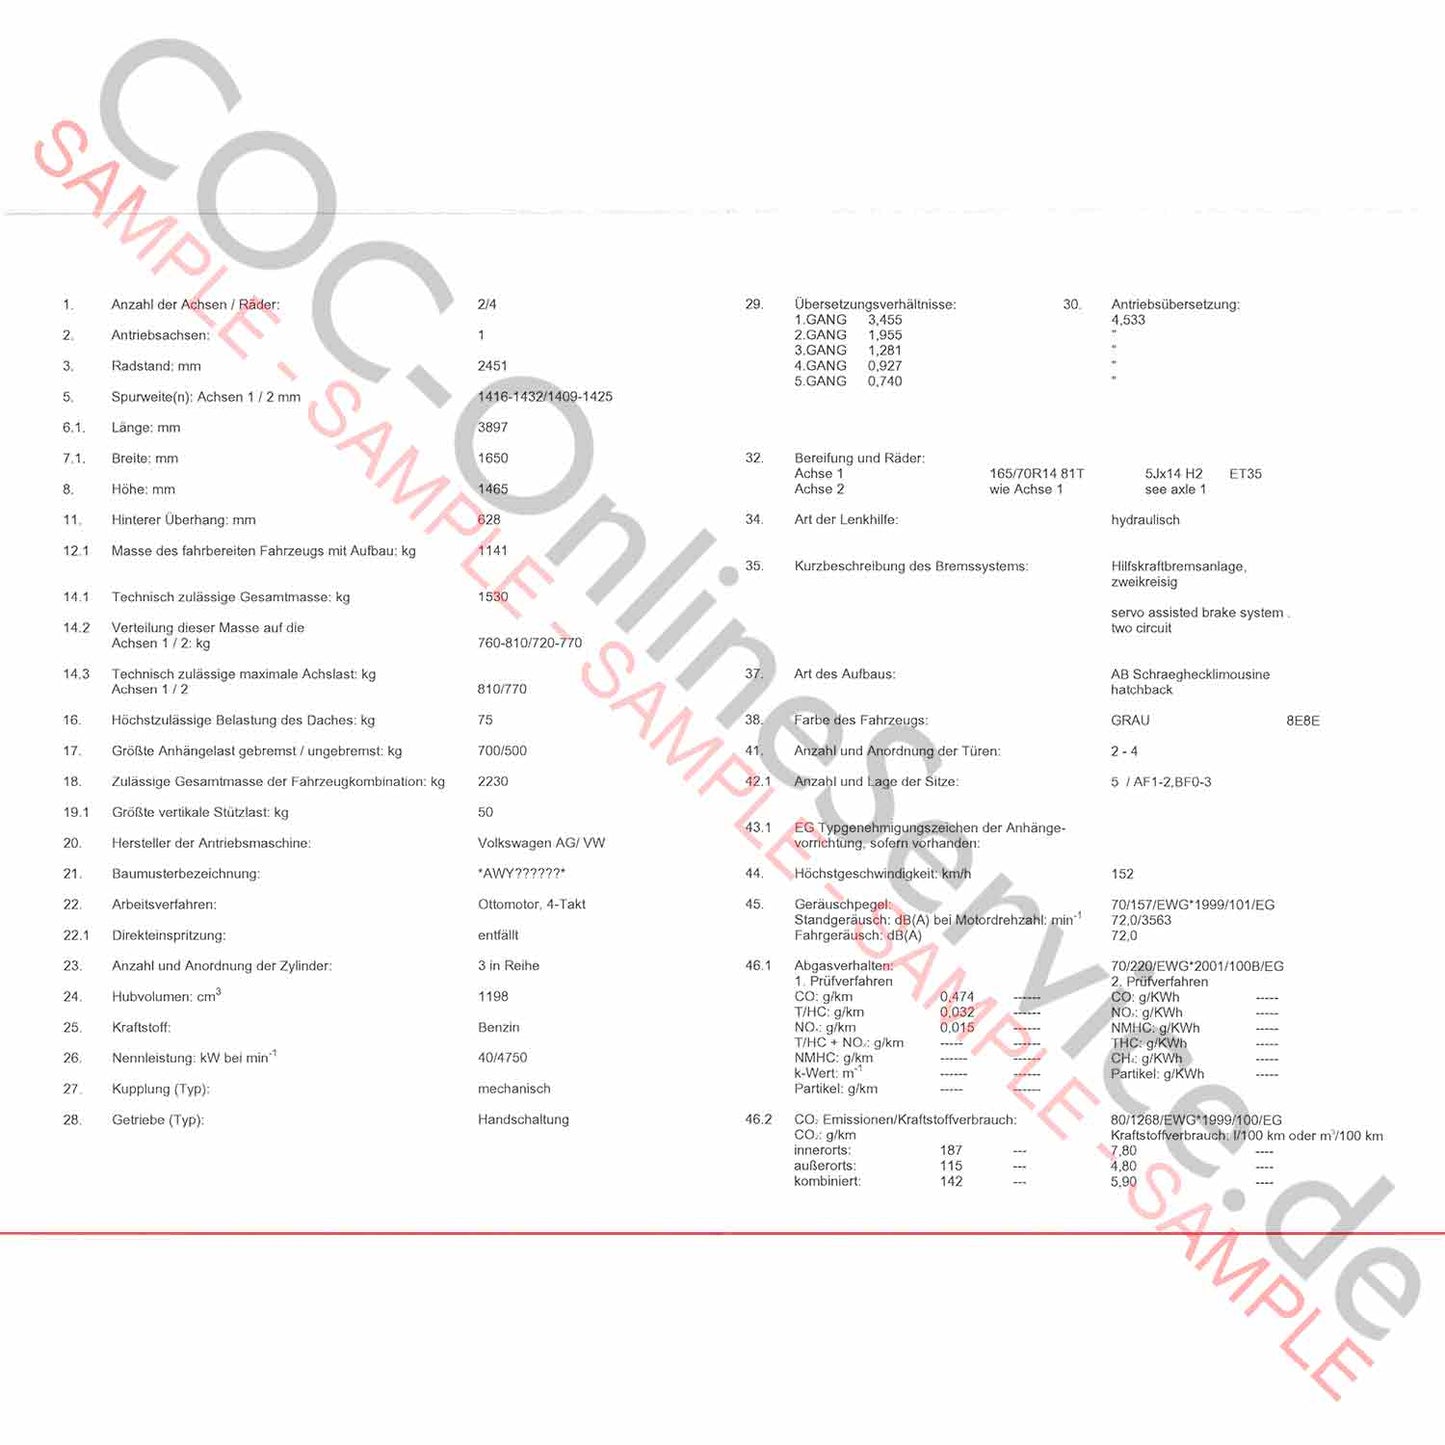 COC document for VW Volkswagen (Certificate of Conformity)